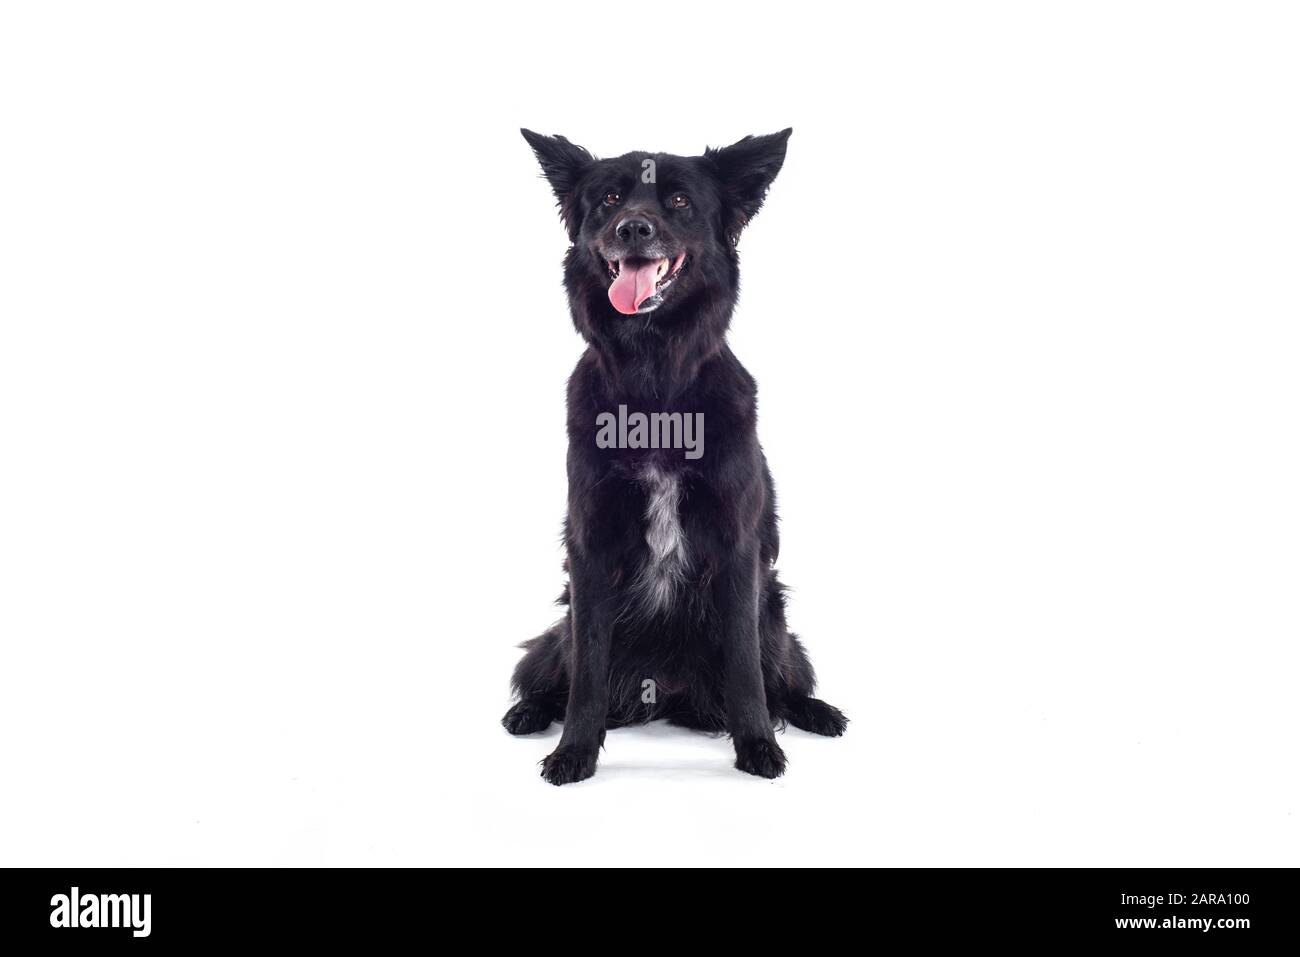 Black Dog in studio Stock Photo